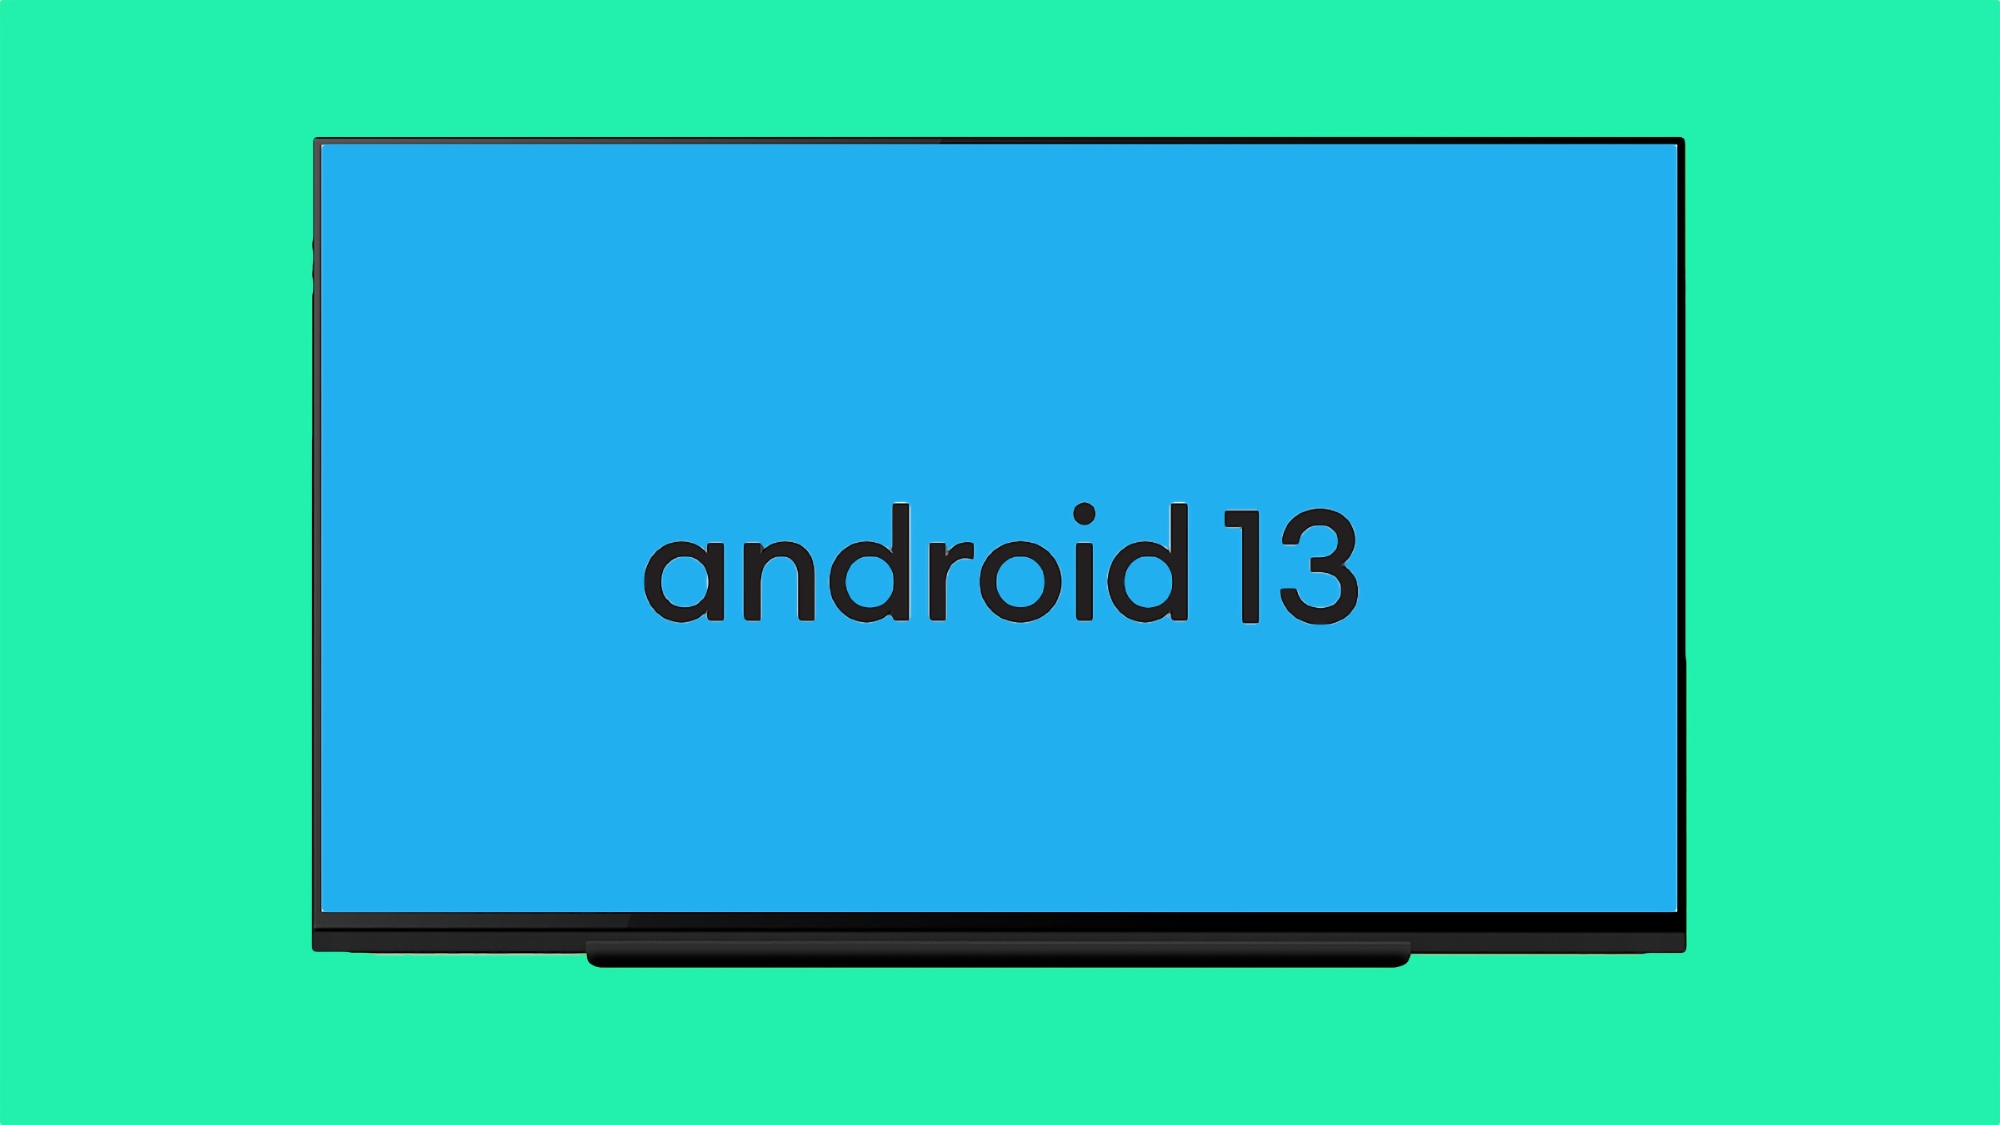 Google ha presentato Android 13 per Android TV con nuove caratteristiche e funzionalità per gli sviluppatori